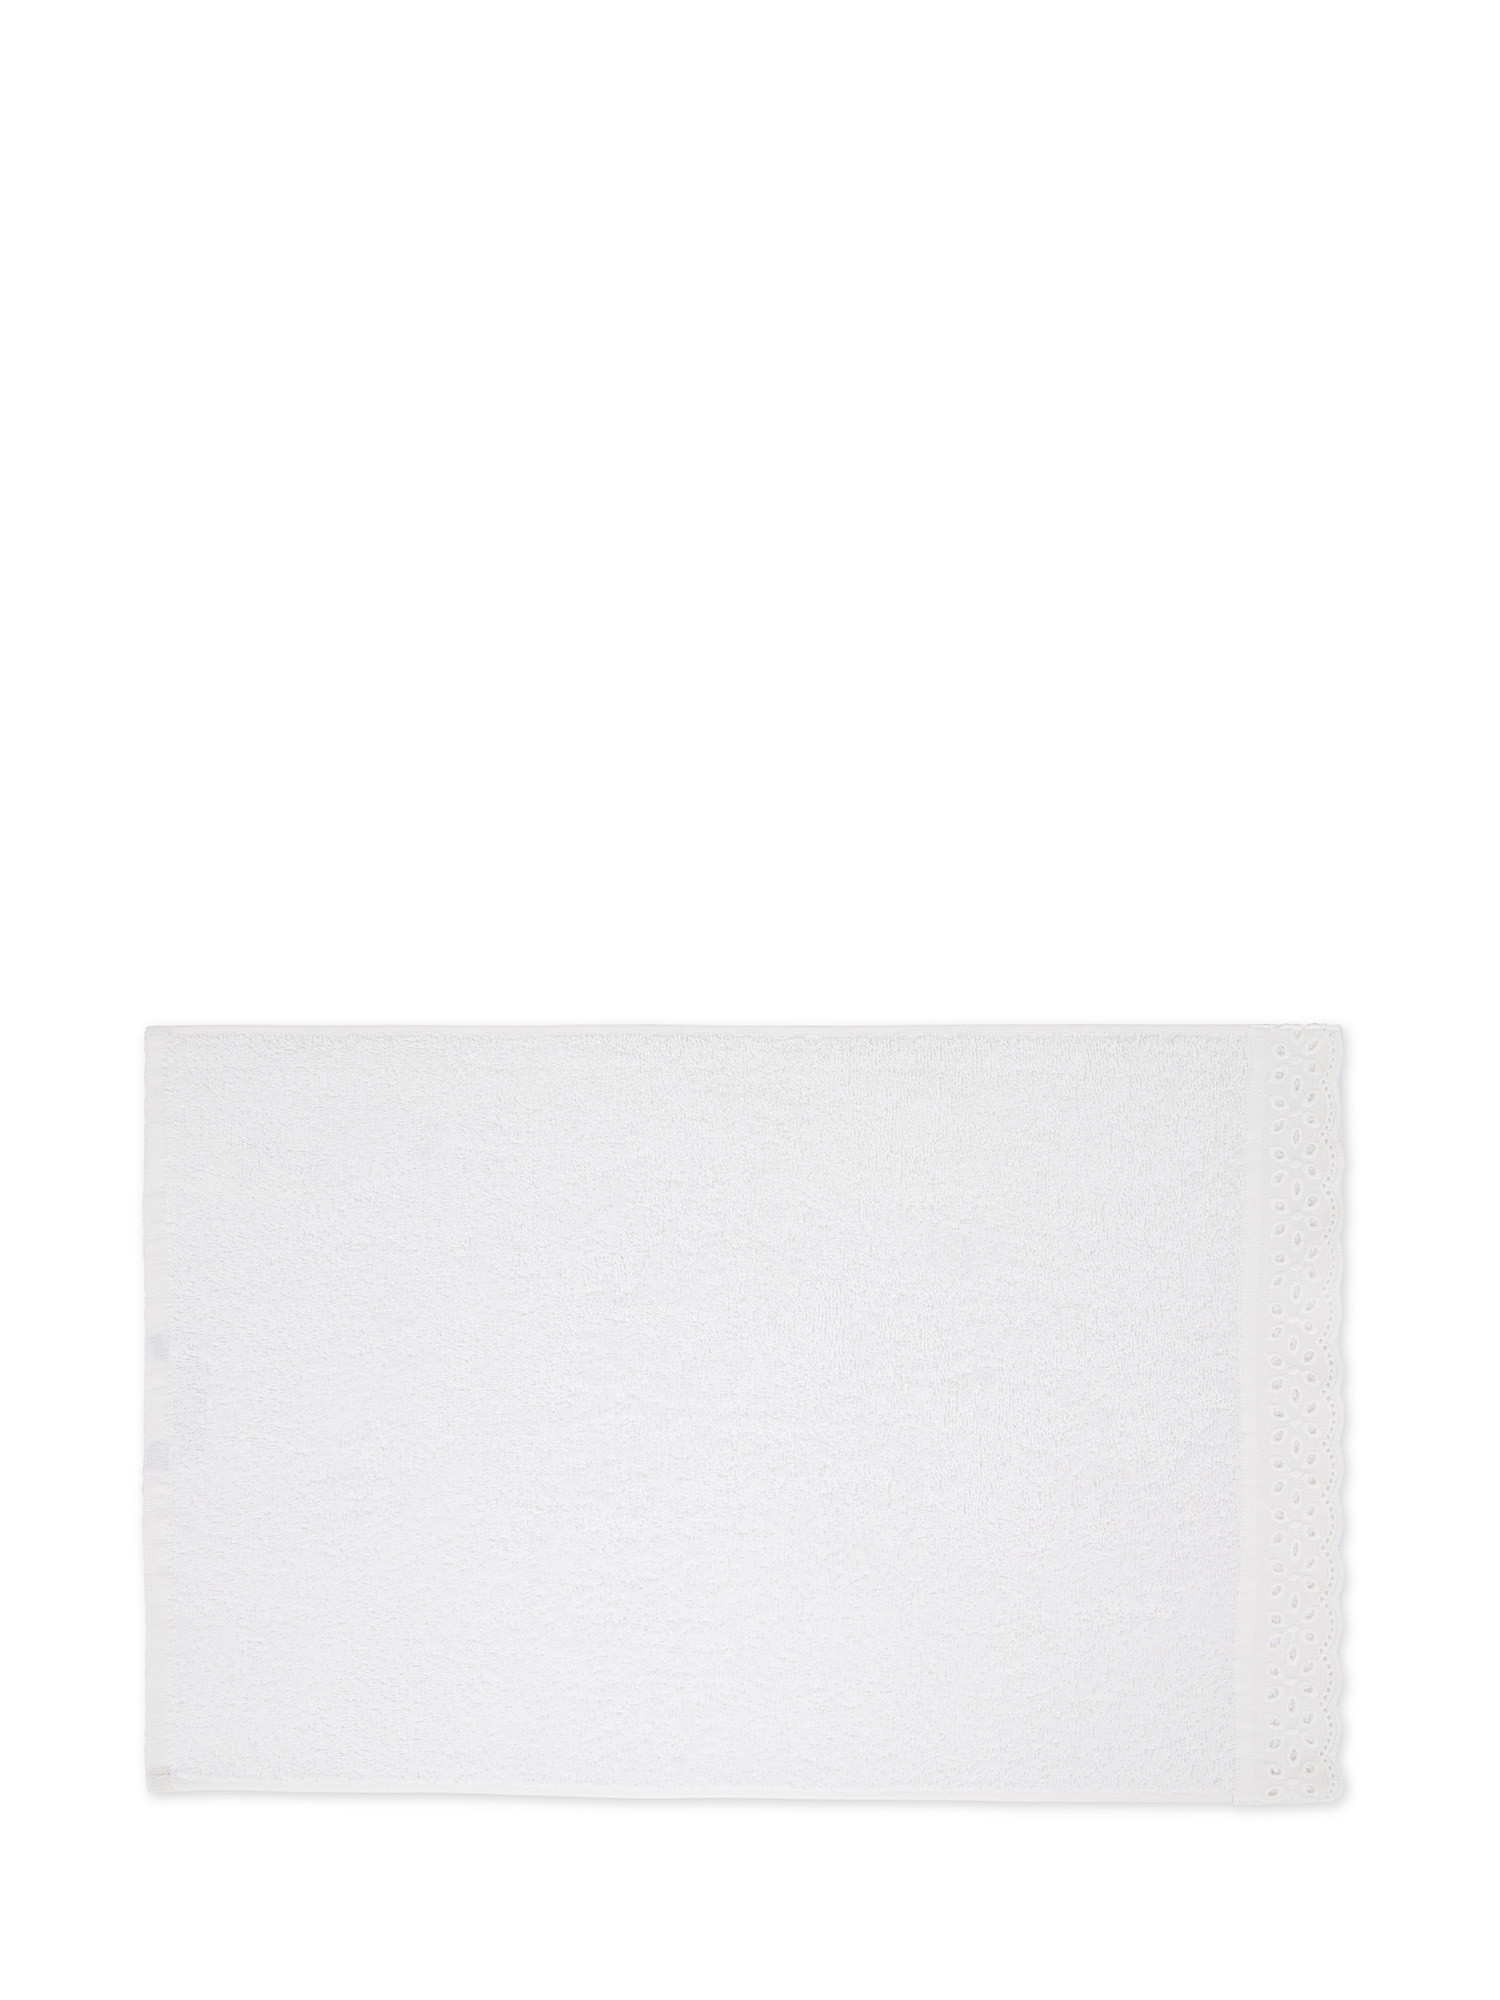 Asciugamano in spugna di cotone con bordo Sangallo, Bianco, large image number 1